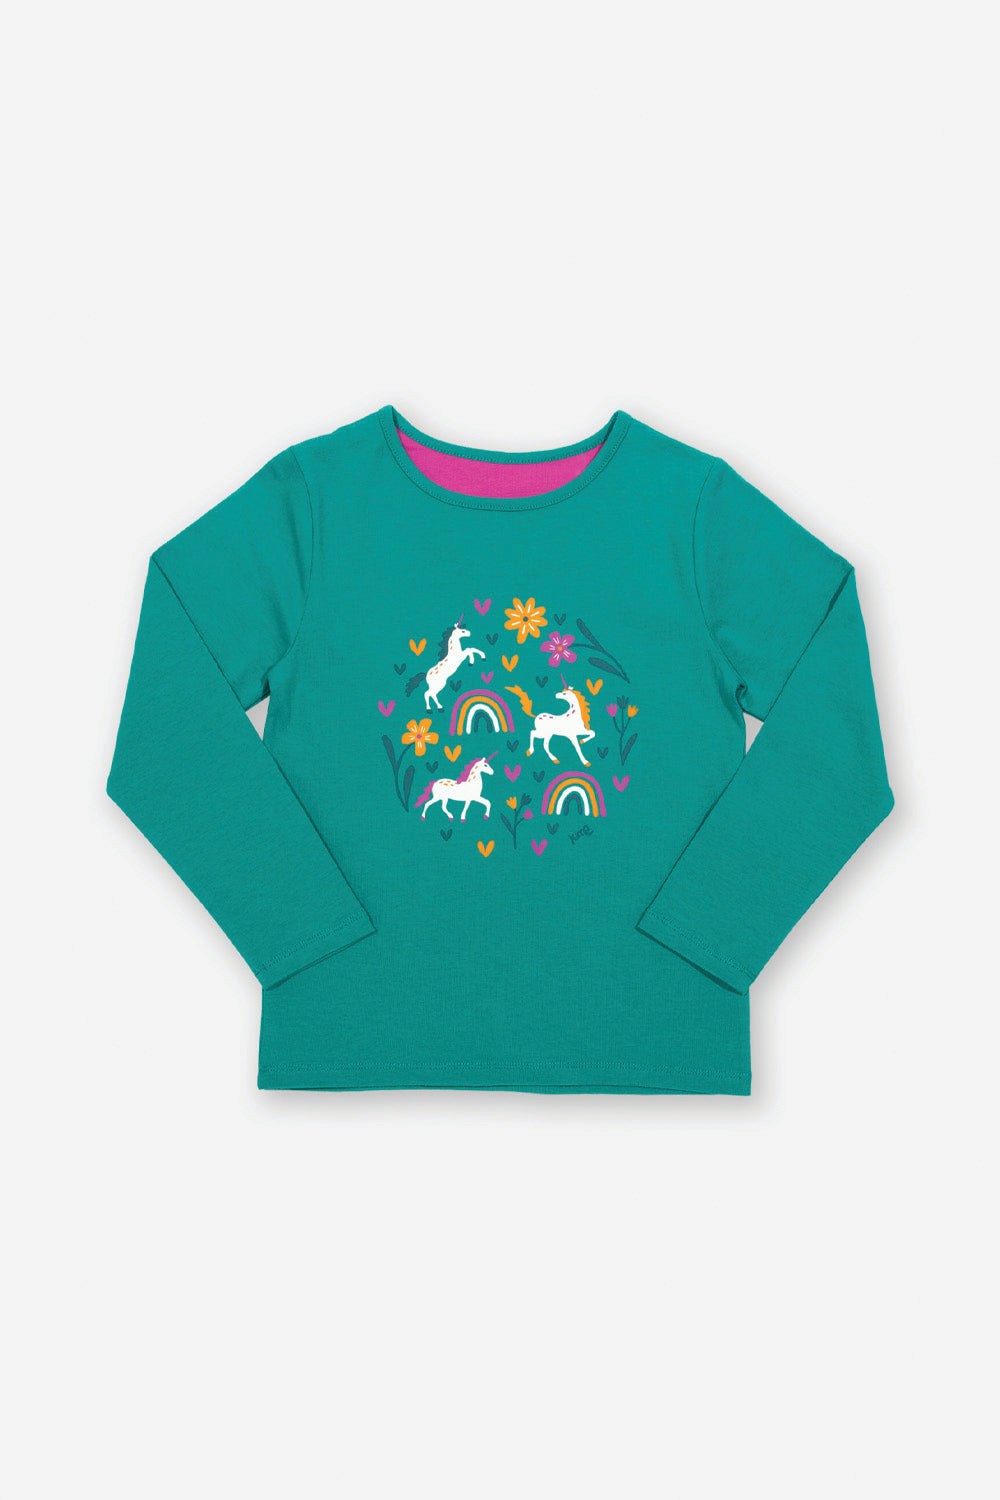 Kids Magical Forest T-Shirt -